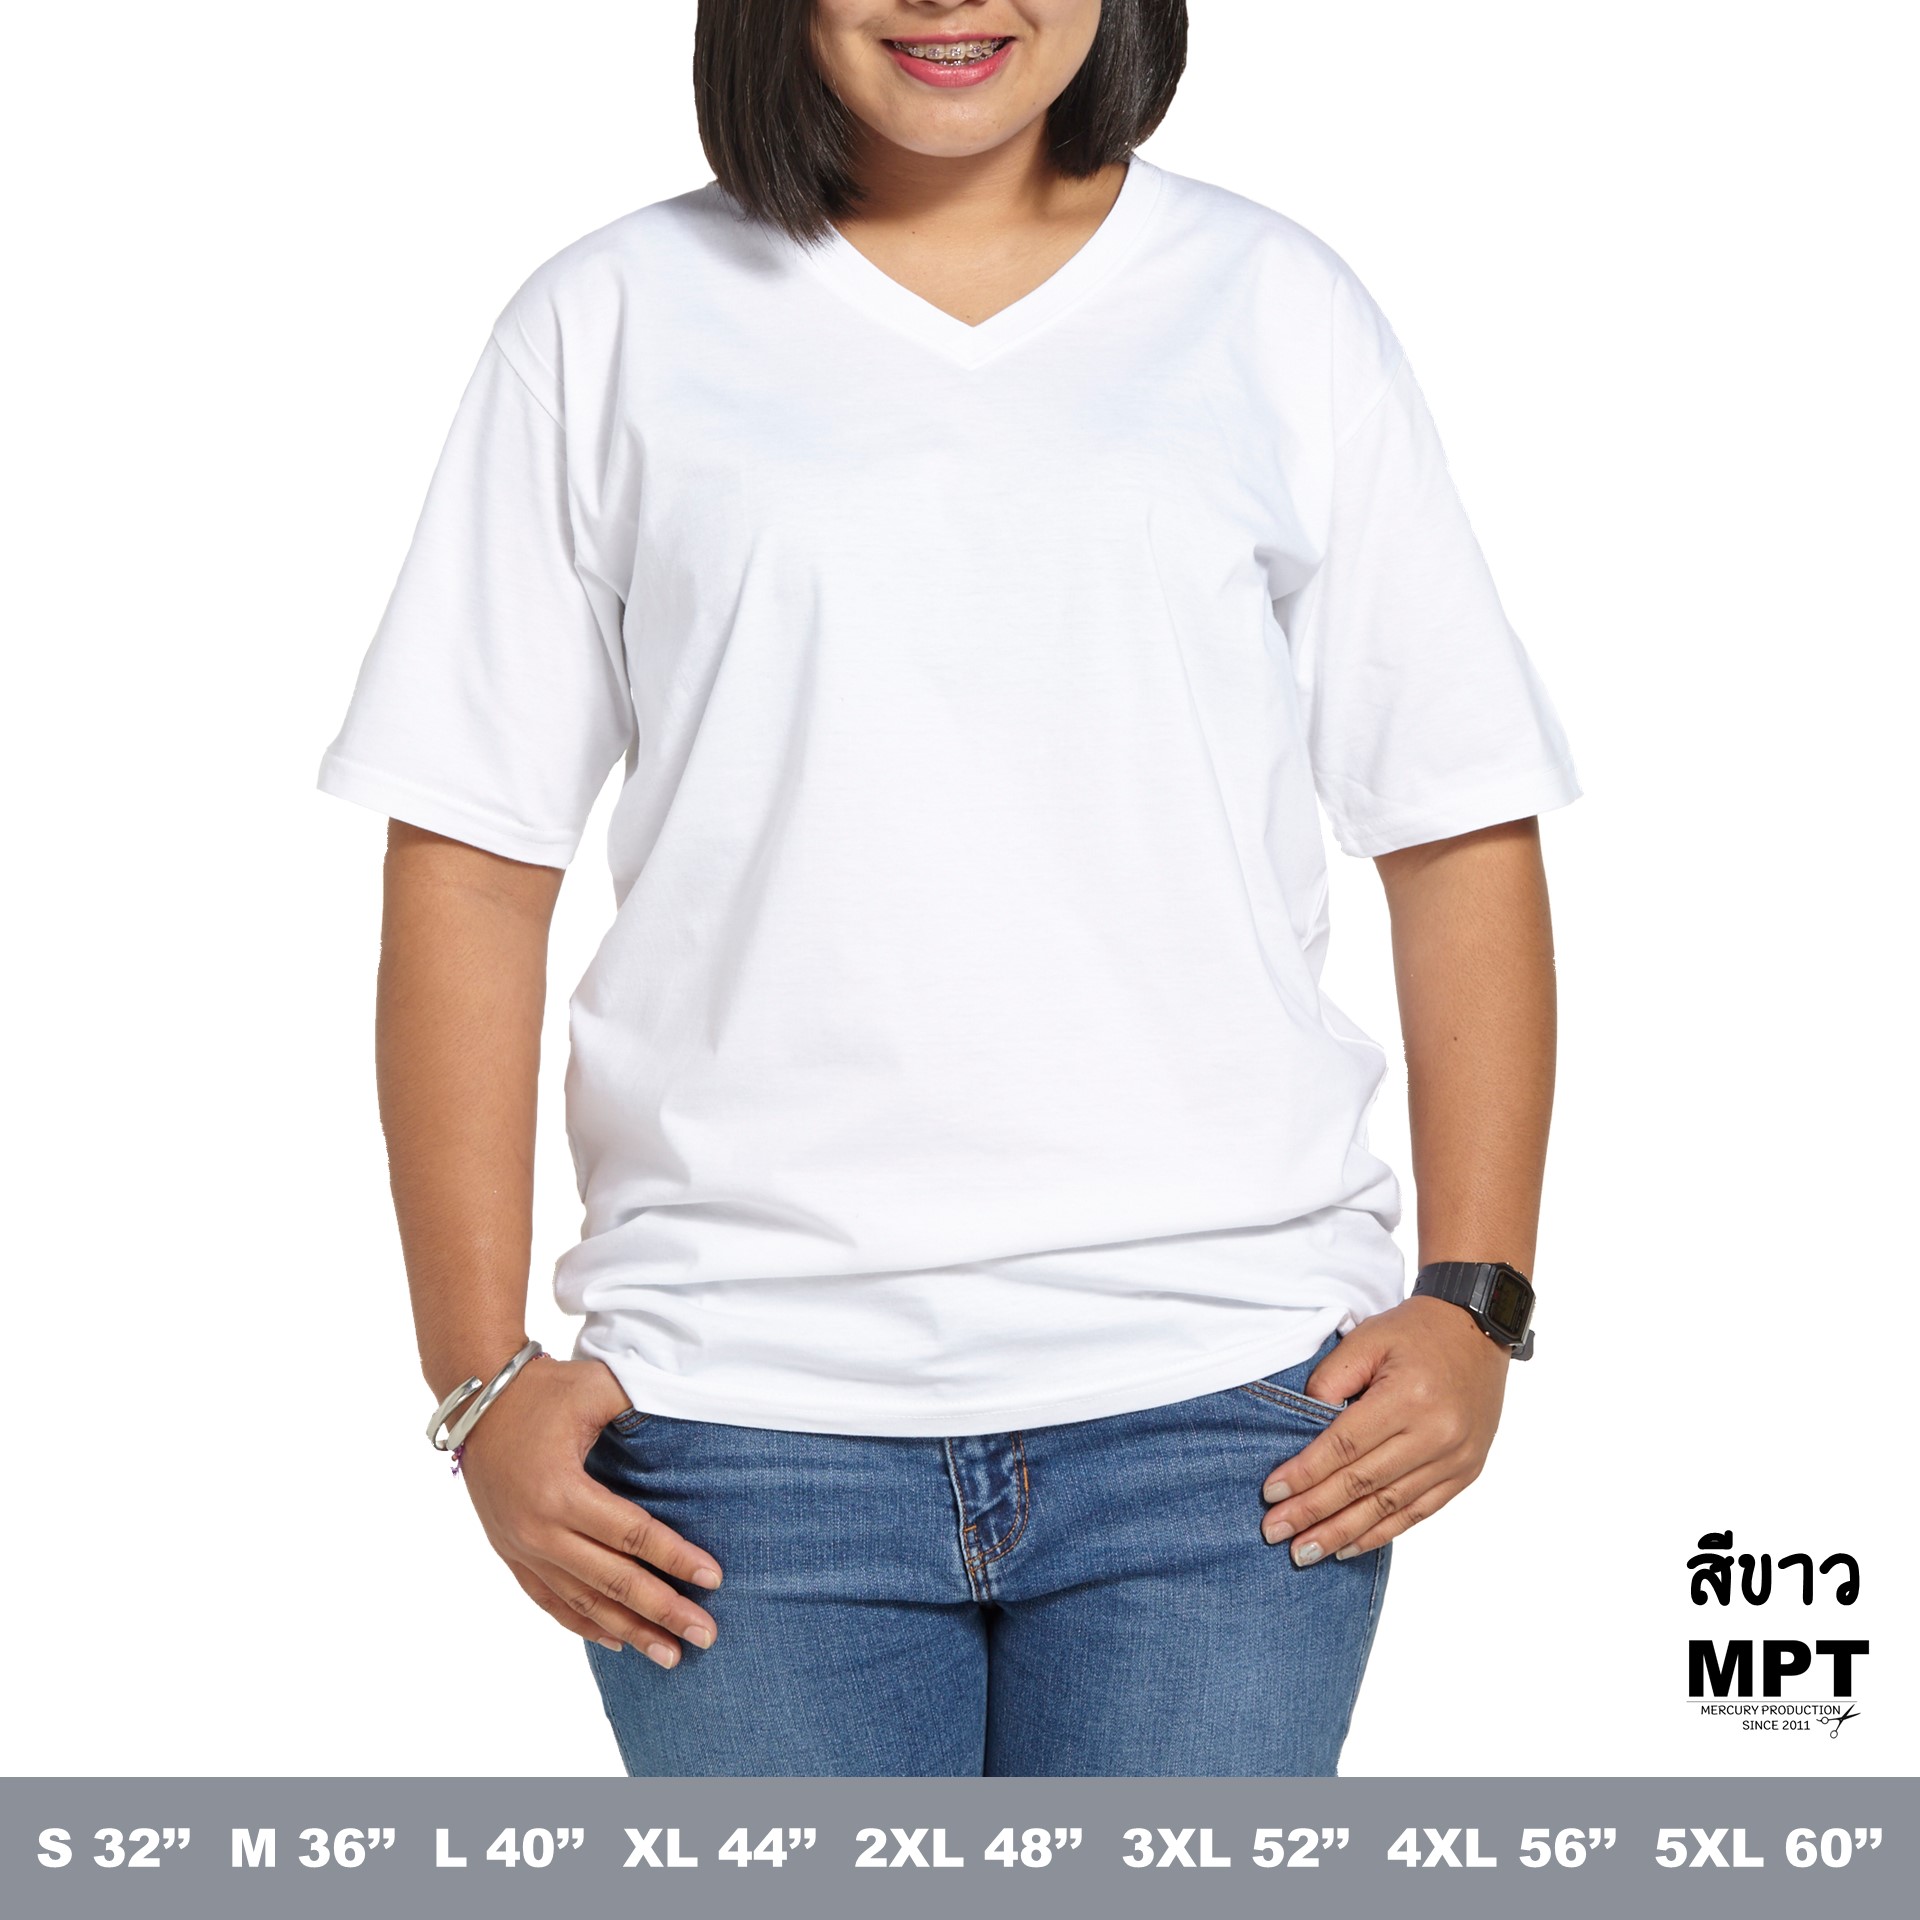 MPTเสื้อยืดสีพื้น คอวี ขาว แขนสั้น  สีไม่ตก ไม่ย้วย เสื้อยืดผู้หญิง เสื้อยืดผู้ชาย เสื้อยืดคนอ้วน จัดส่งเร็ว (V Neck-Short Sleeve-unisex)